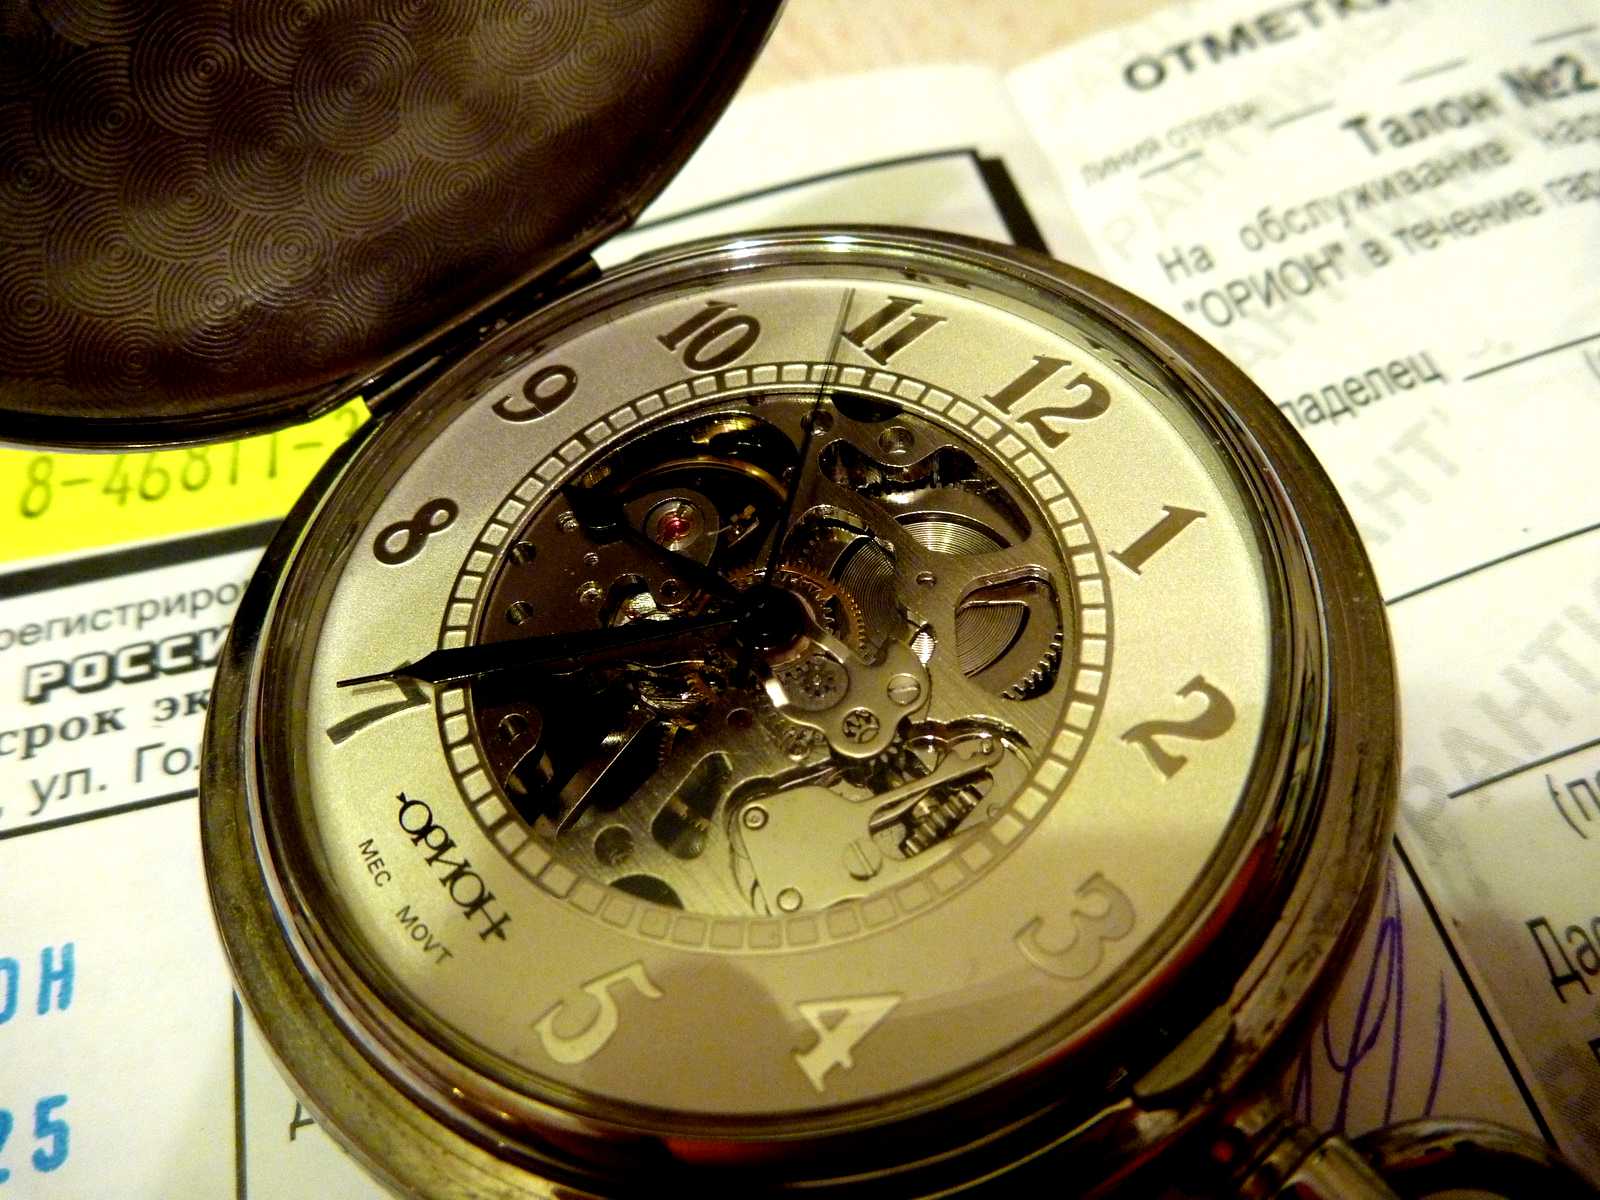 25 тысяч часов. Часы Орион скелетон. Карманные часы Орион скелетон. Орион часы мужские карманные. Часы Орион скелетон 2002.